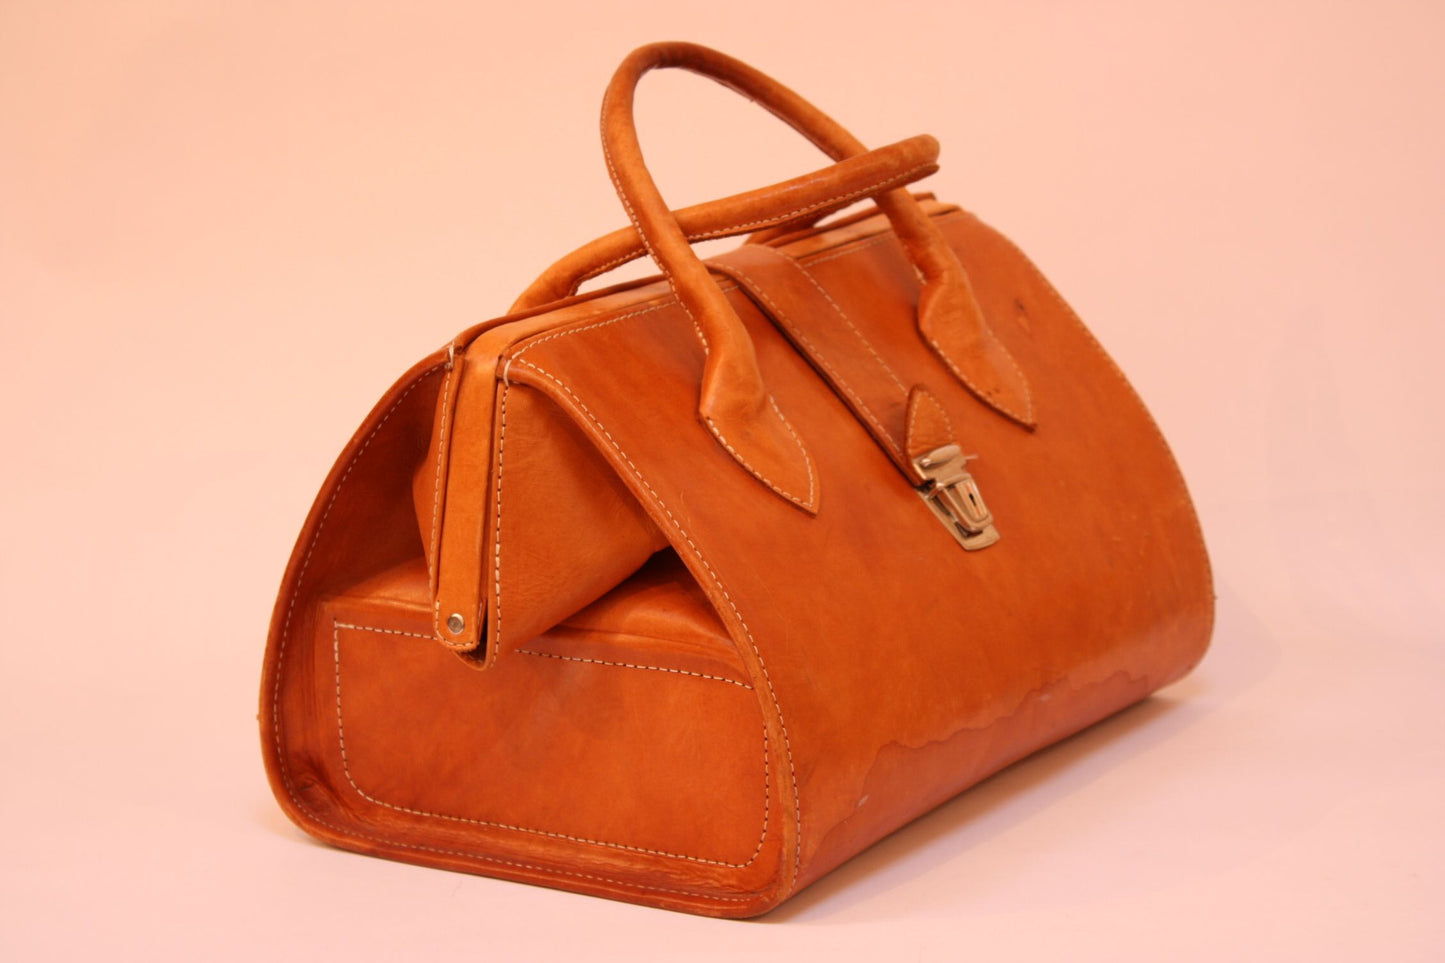 Vintage tan leather doctotr's bag